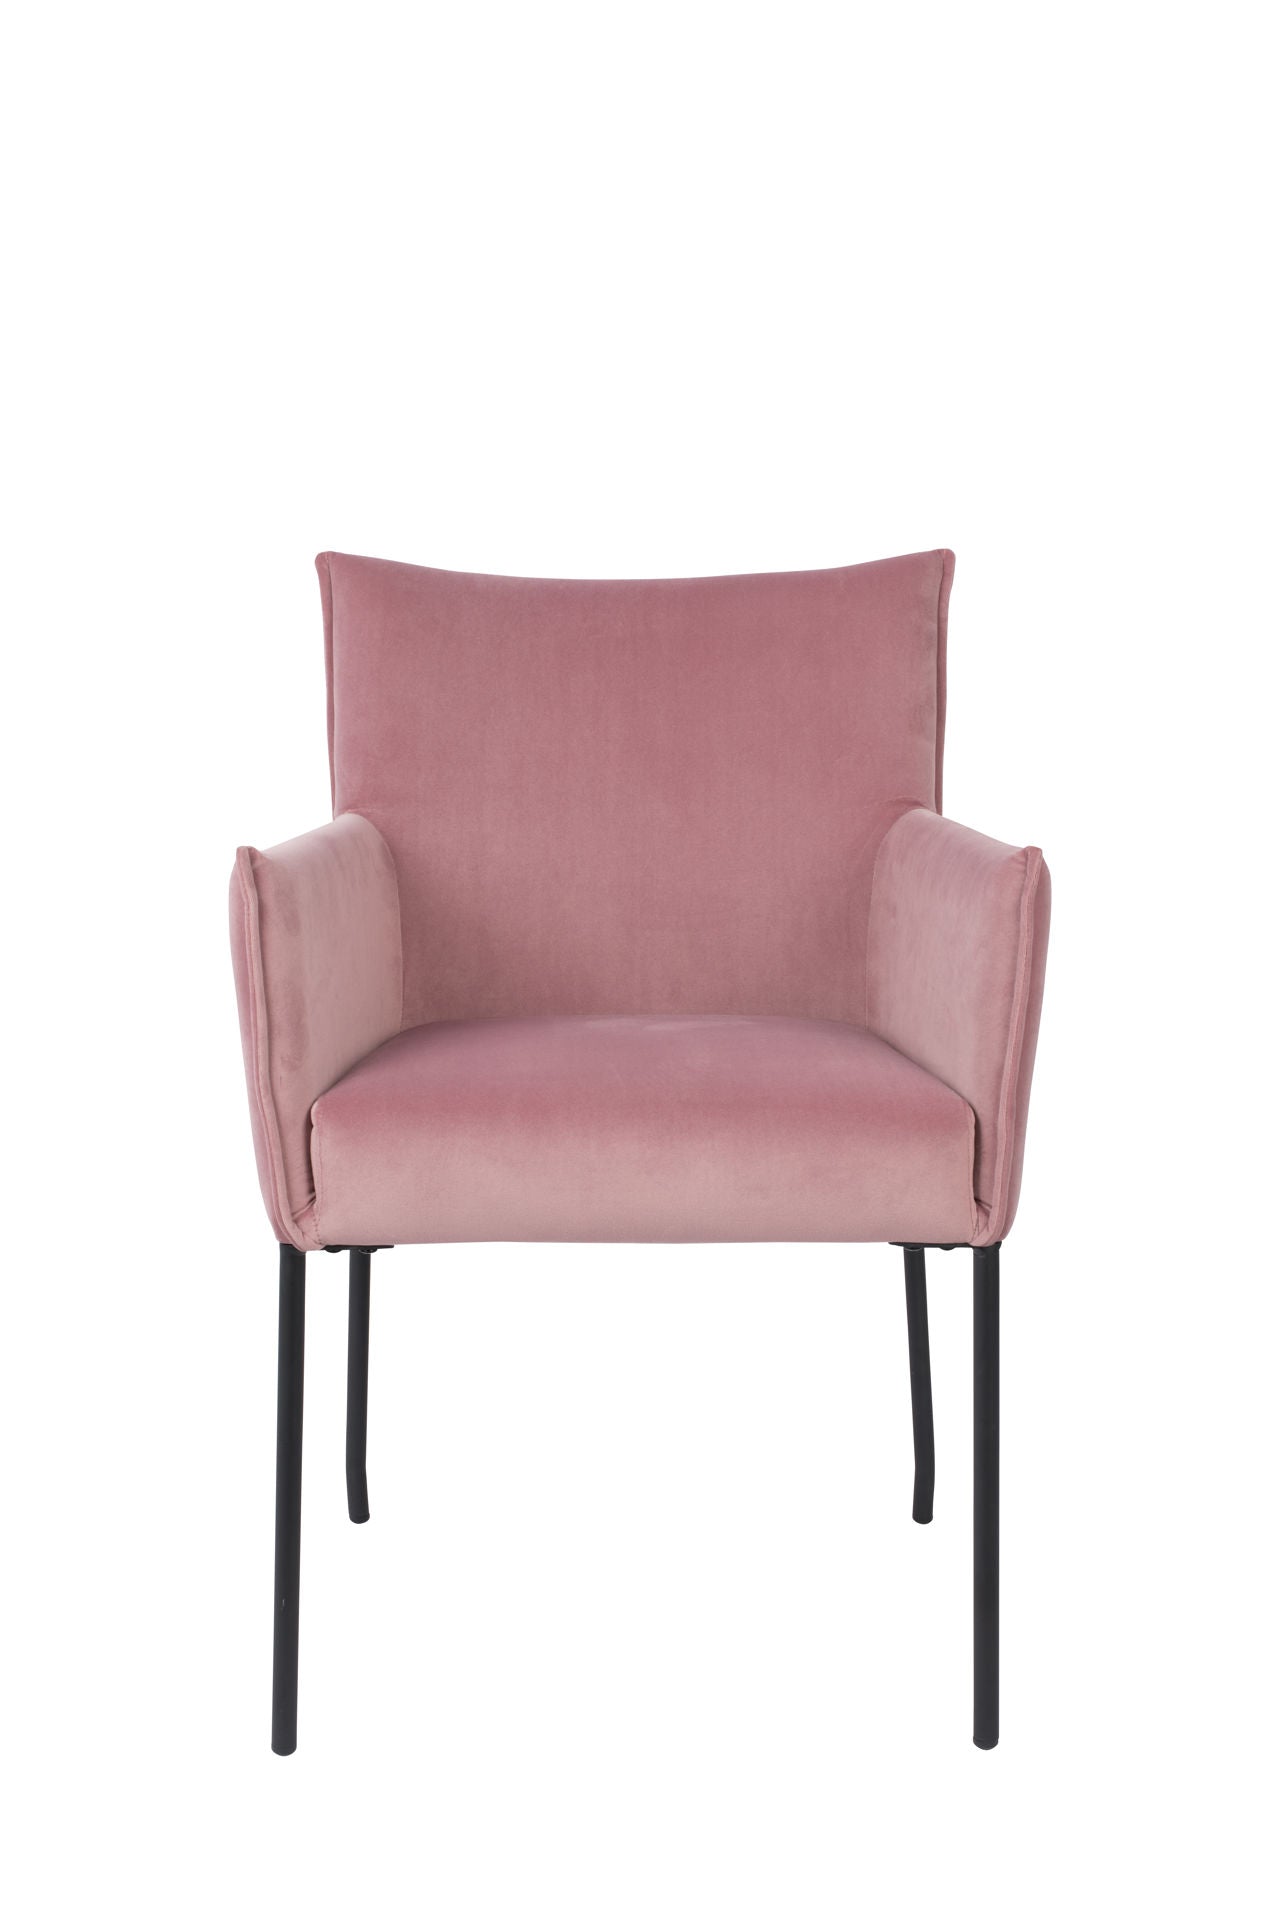 Nancy's Lucas Chair - Scandinavian - Pink - Velvet, Pine Wood, Steel - 64 cm x 59 cm x 86.5 cm